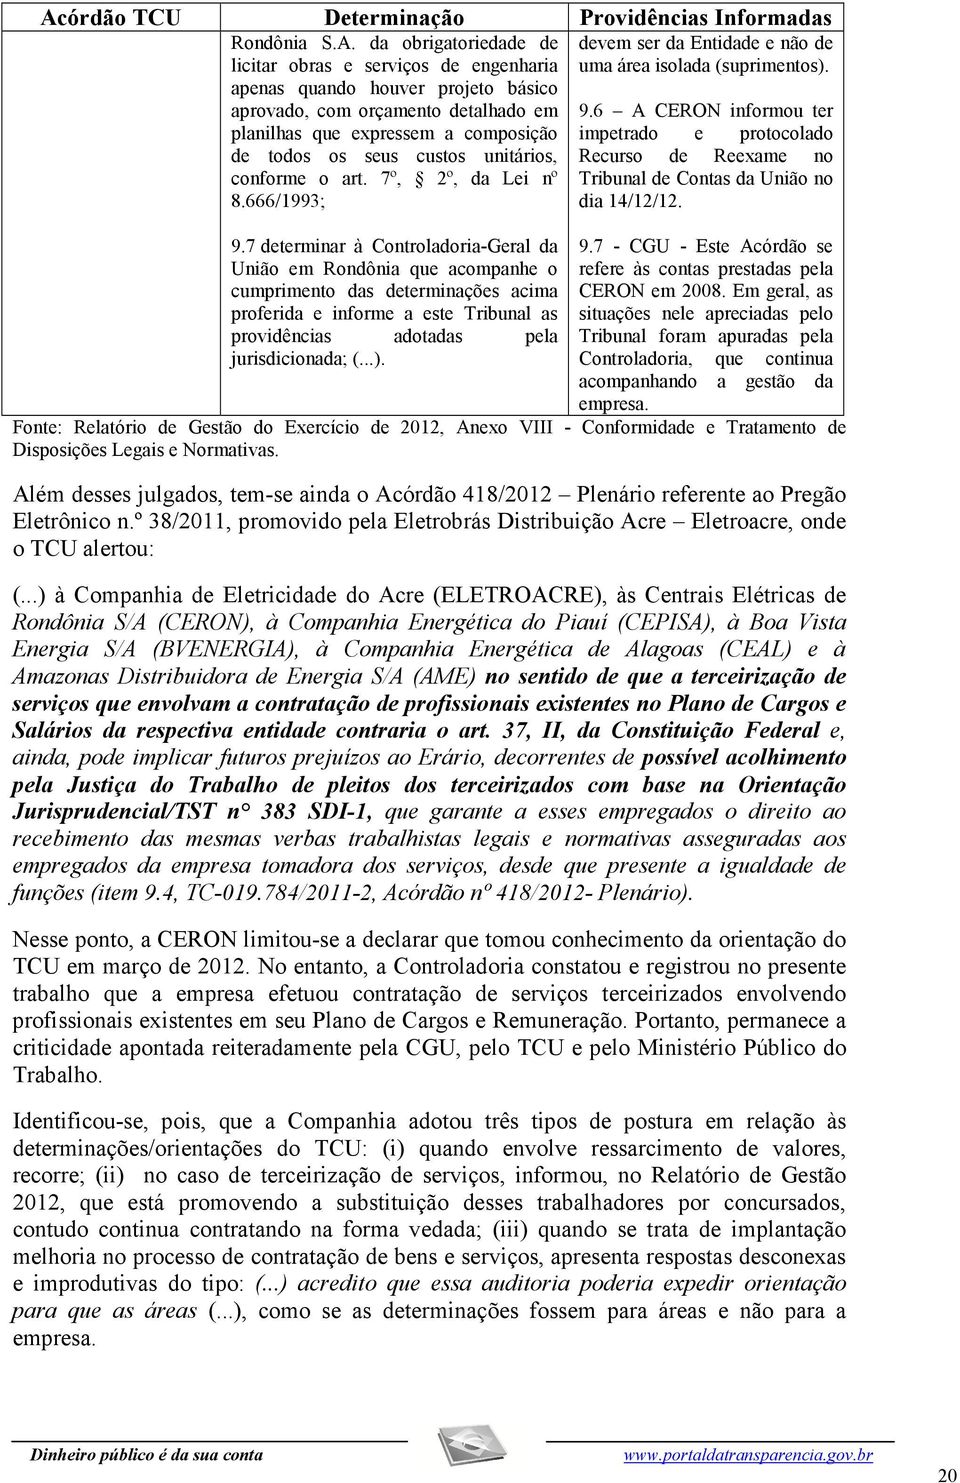 7 determinar à Controladoria-Geral da União em Rondônia que acompanhe o cumprimento das determinações acima proferida e informe a este Tribunal as providências adotadas pela jurisdicionada; (...).